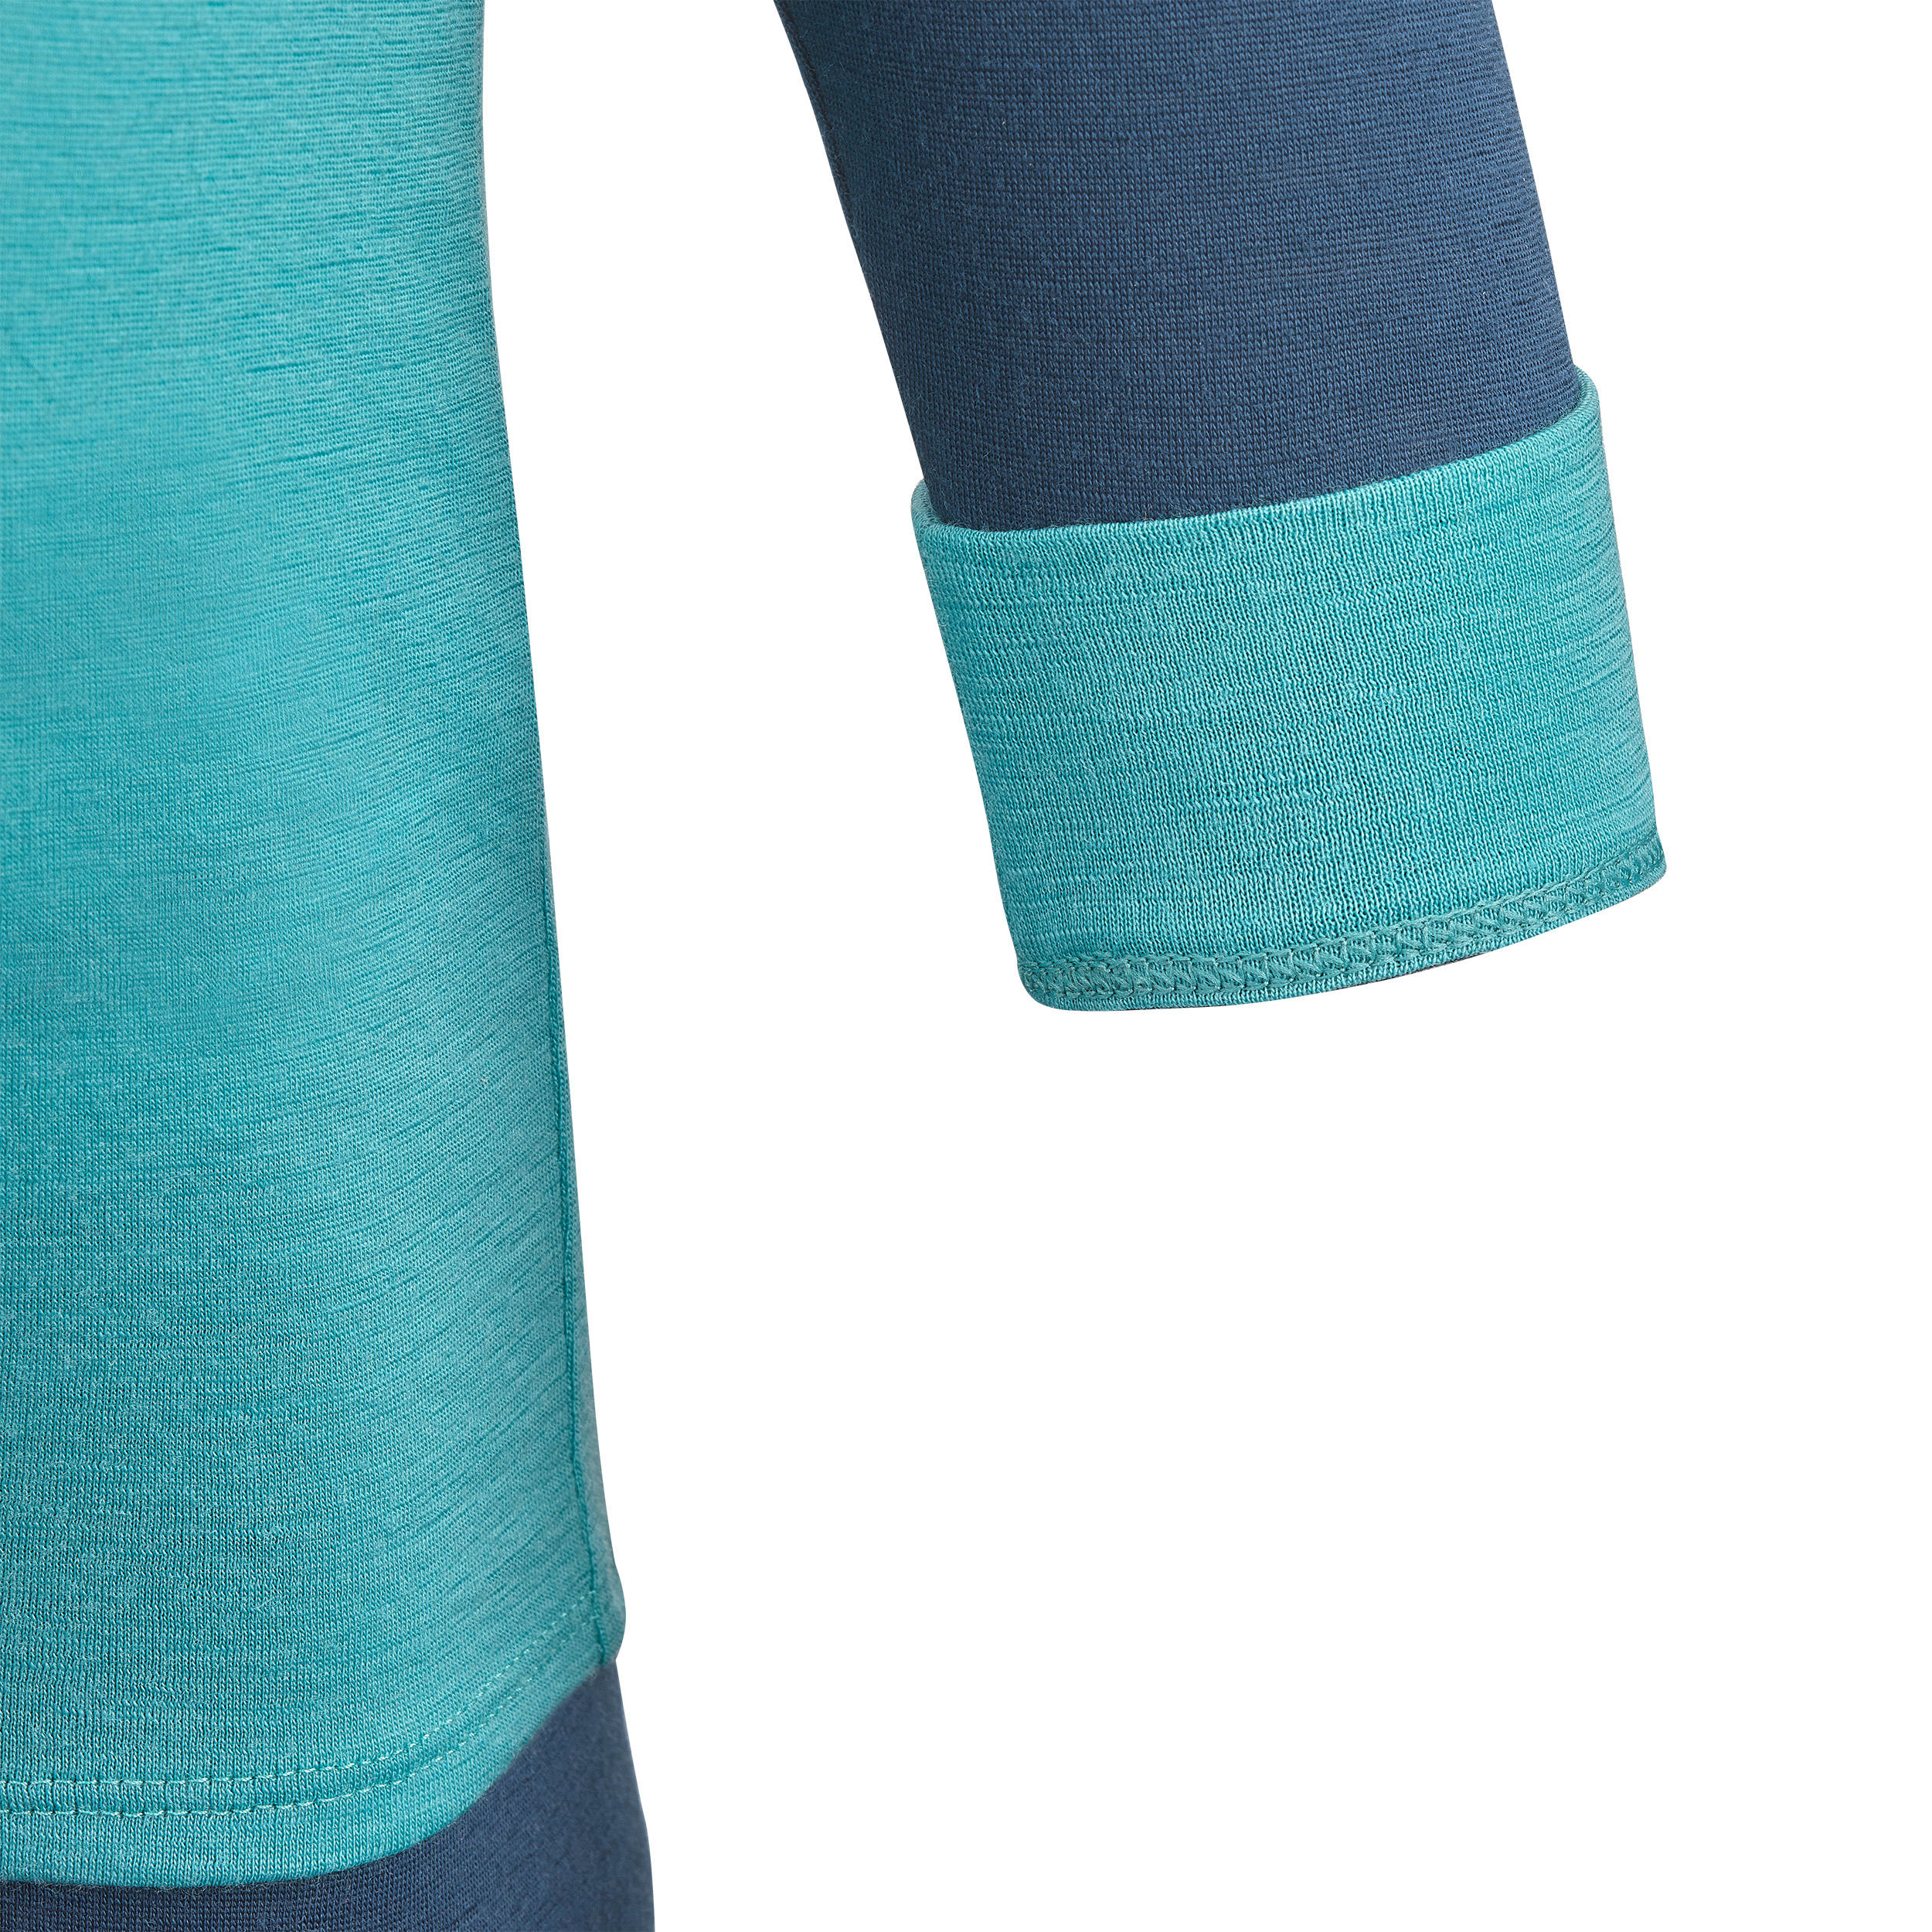 Baby ski base layer top, undershirt merino wool MERIWARM turquoise 5/11